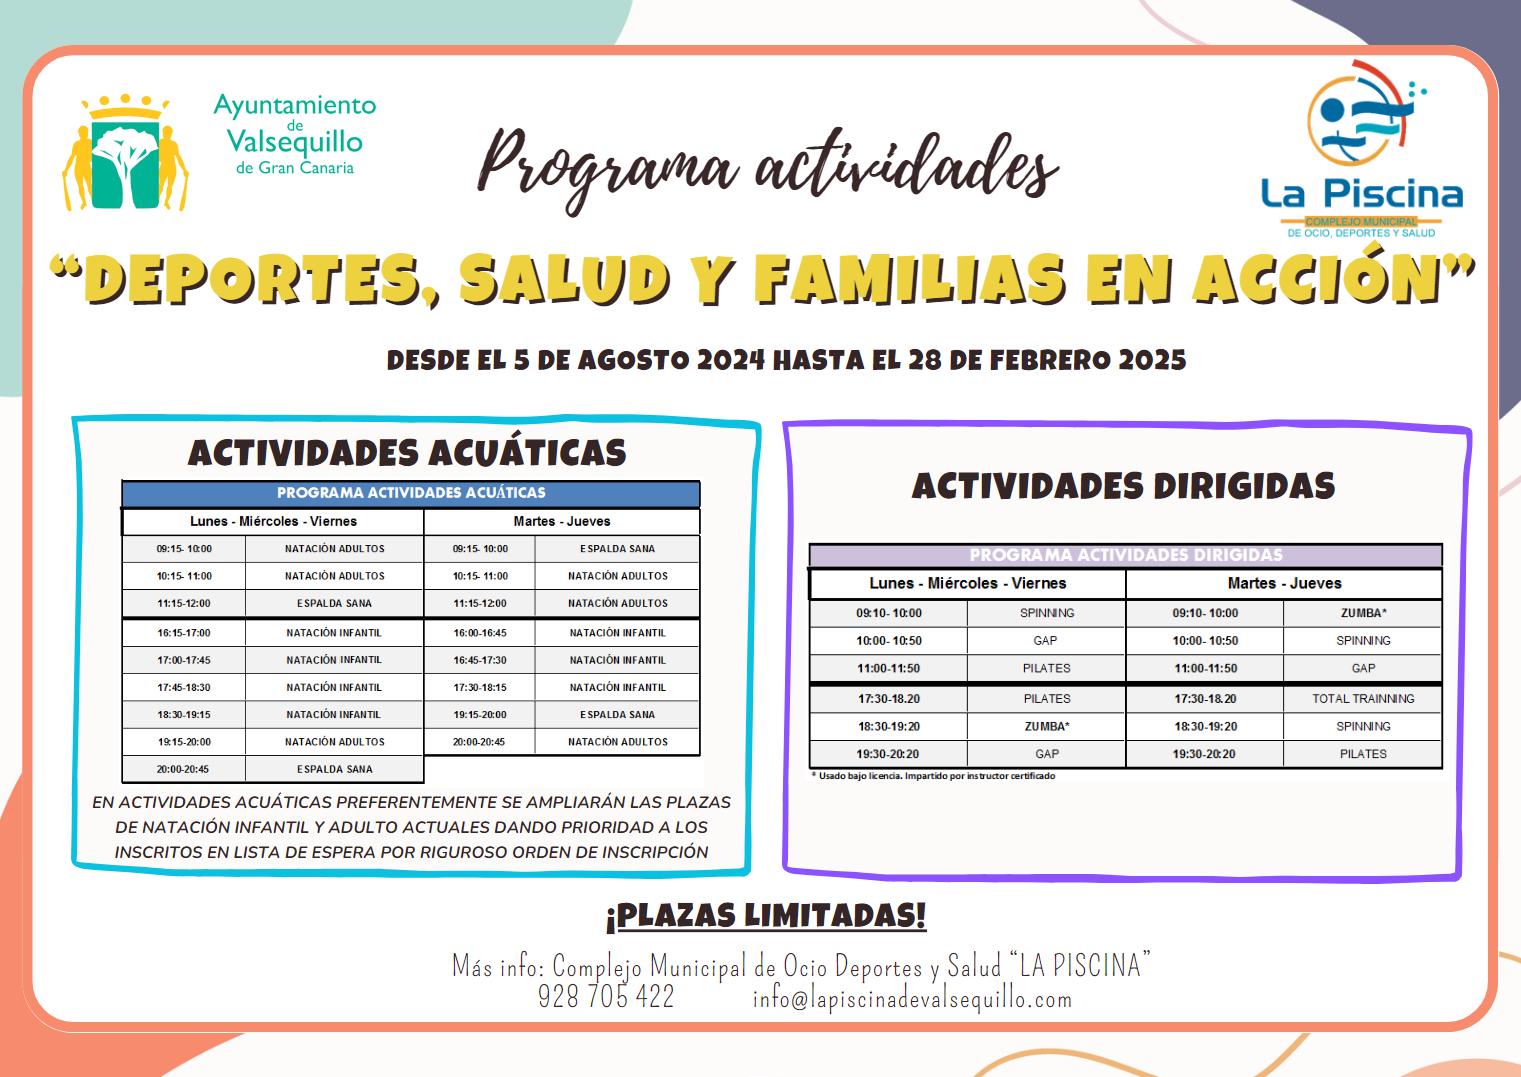 Featured image for “Abiertas las inscripciones para las actividades dirigidas en el  complejo de Ocio, Deportes y Salud «La Piscina»”